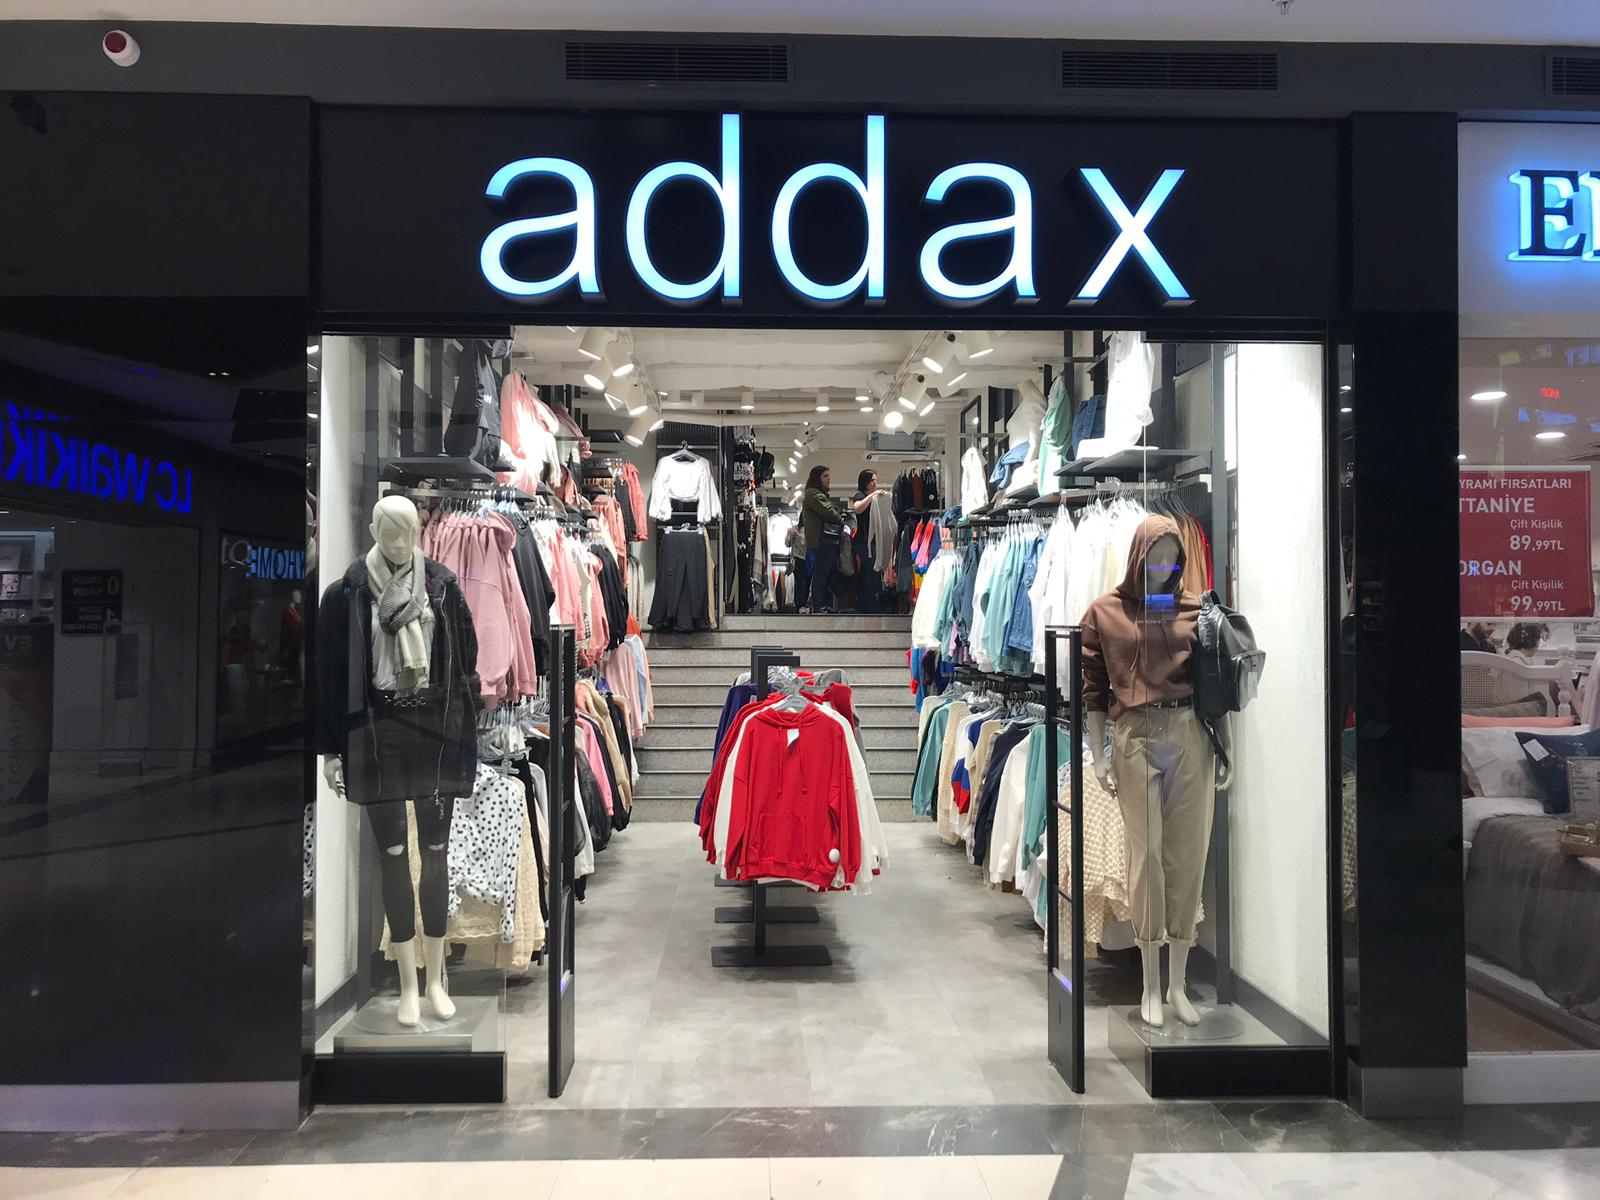 Addax - 25